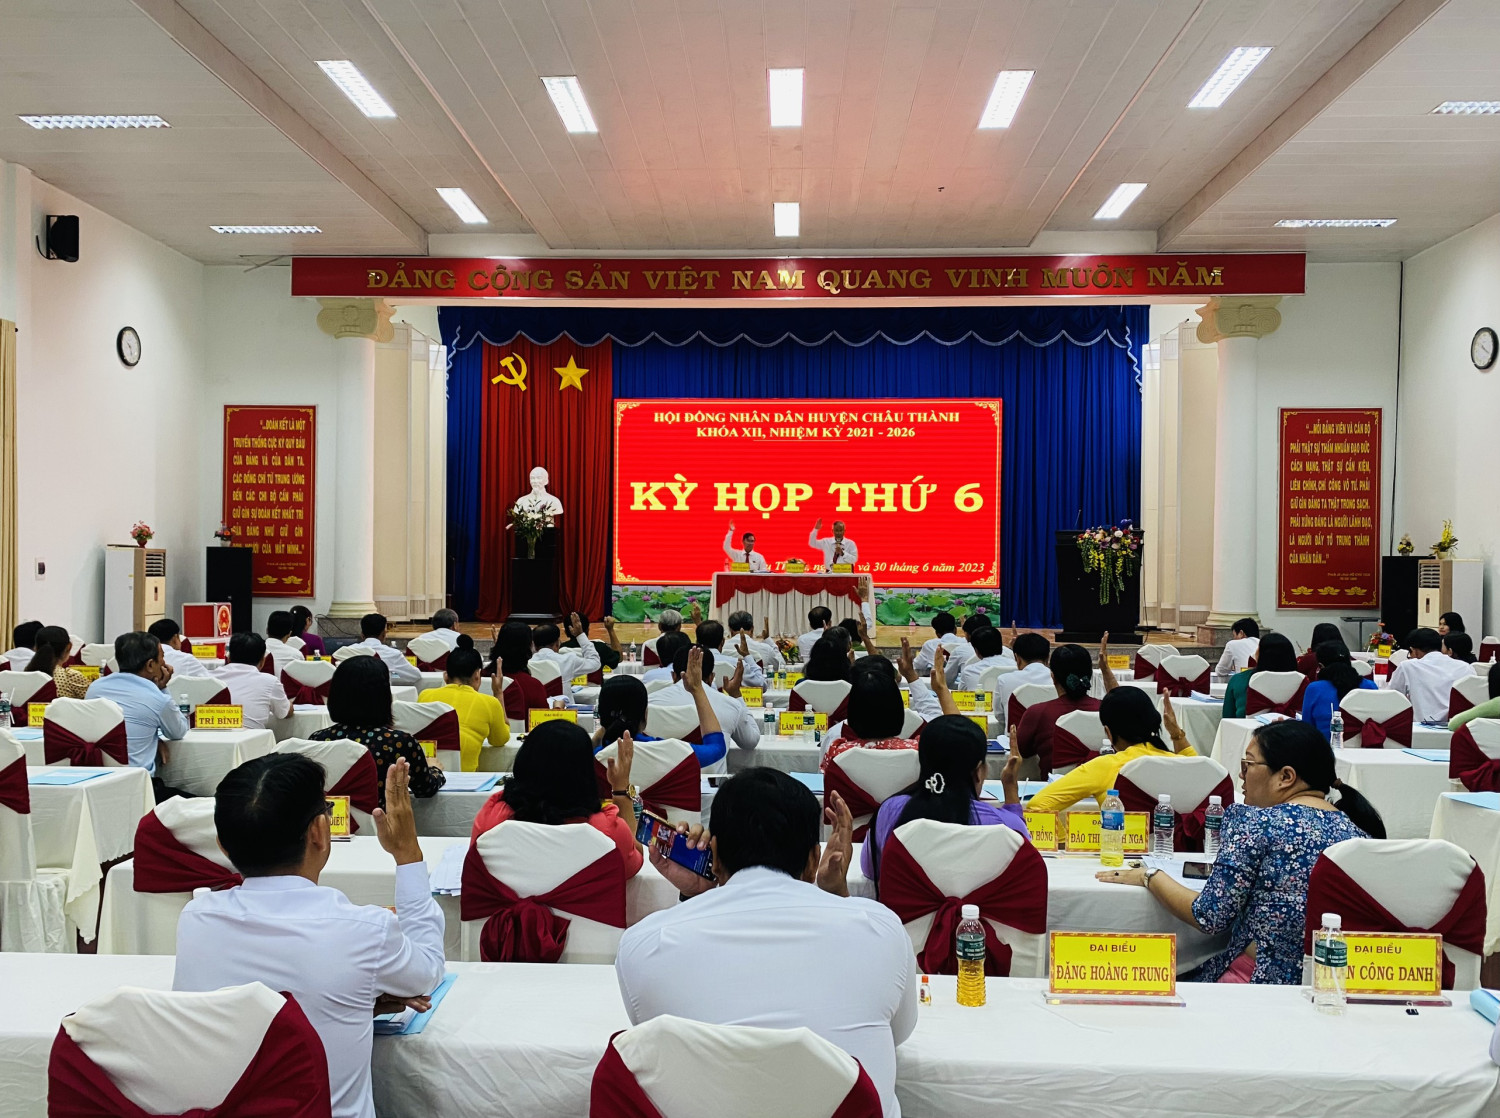 HĐND huyện Châu Thành: Tiến hành kỳ họp thứ 6, khoá XII, nhiệm kỳ 2021-2026